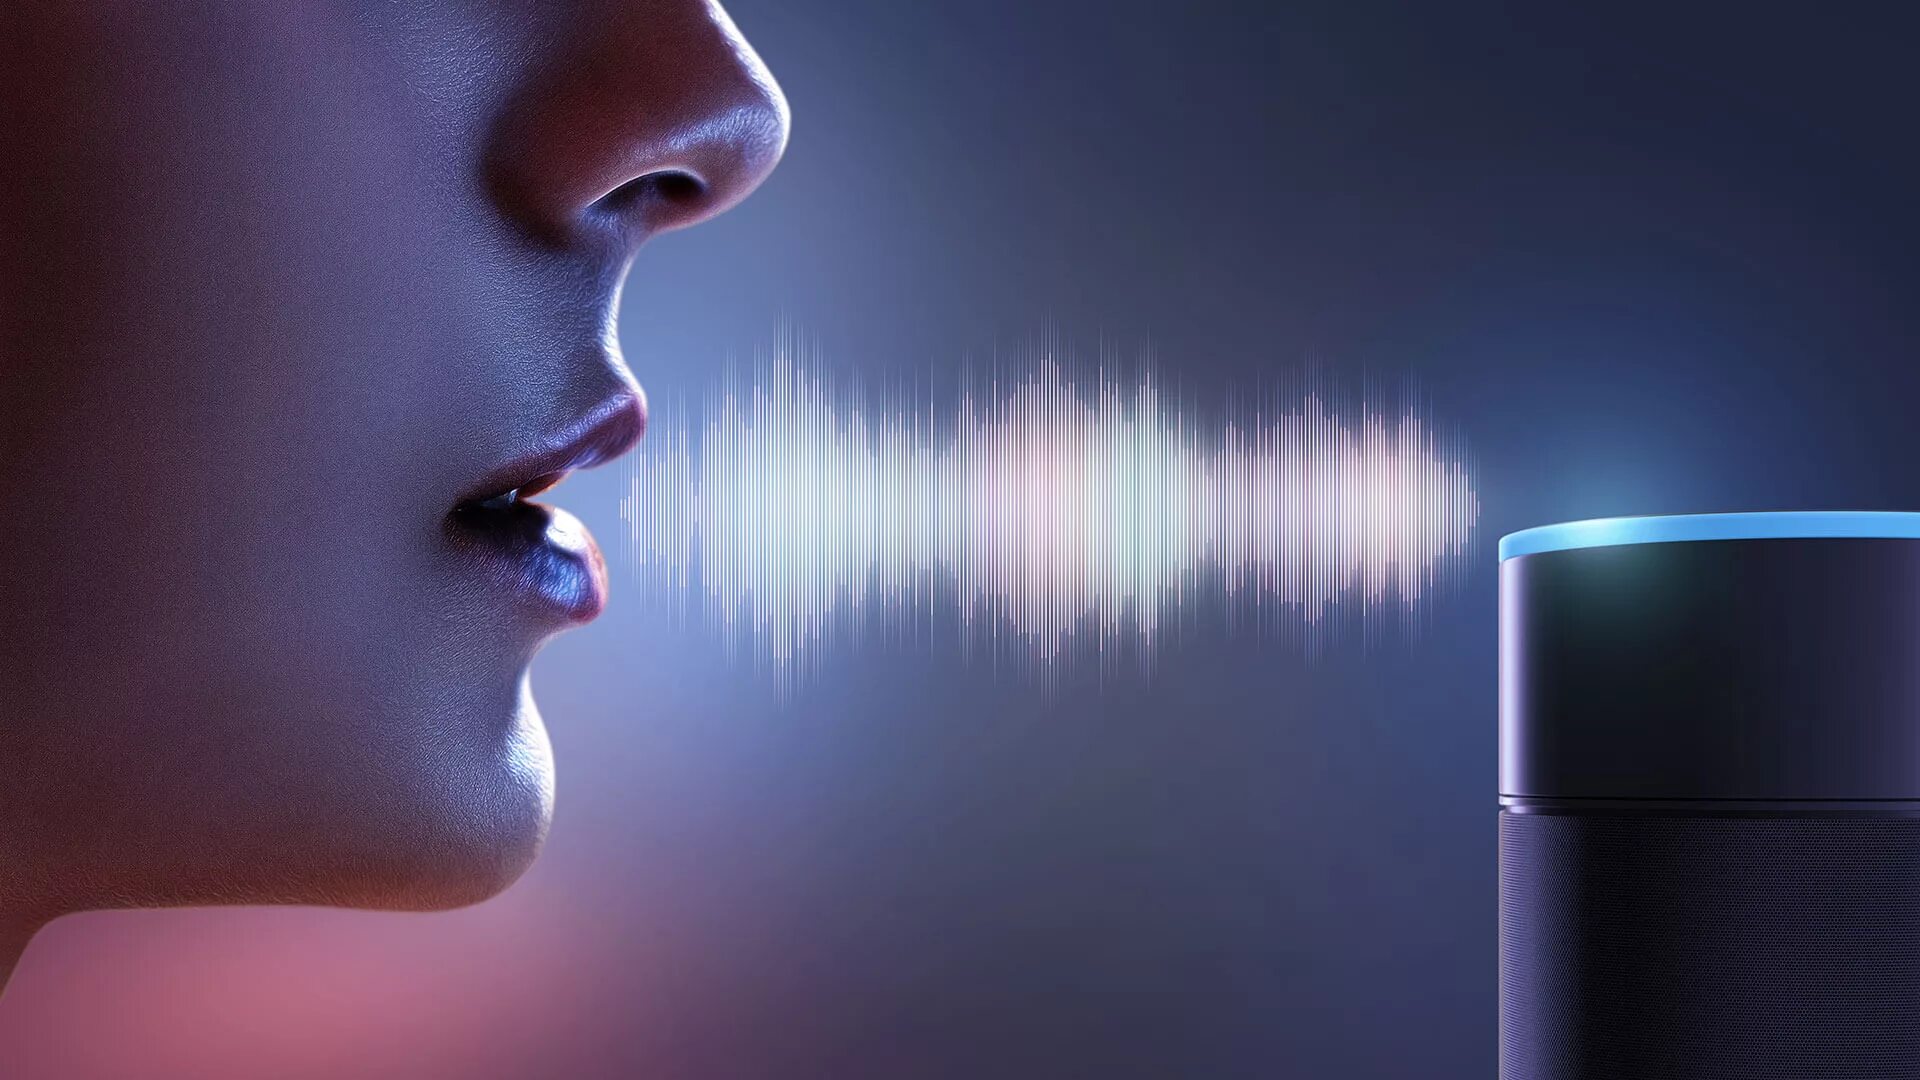 Голосовой информации. Идентификация по голосу. Распознавание речи. Биометрическая аутентификация по голосу. Биометрический сканер голоса.